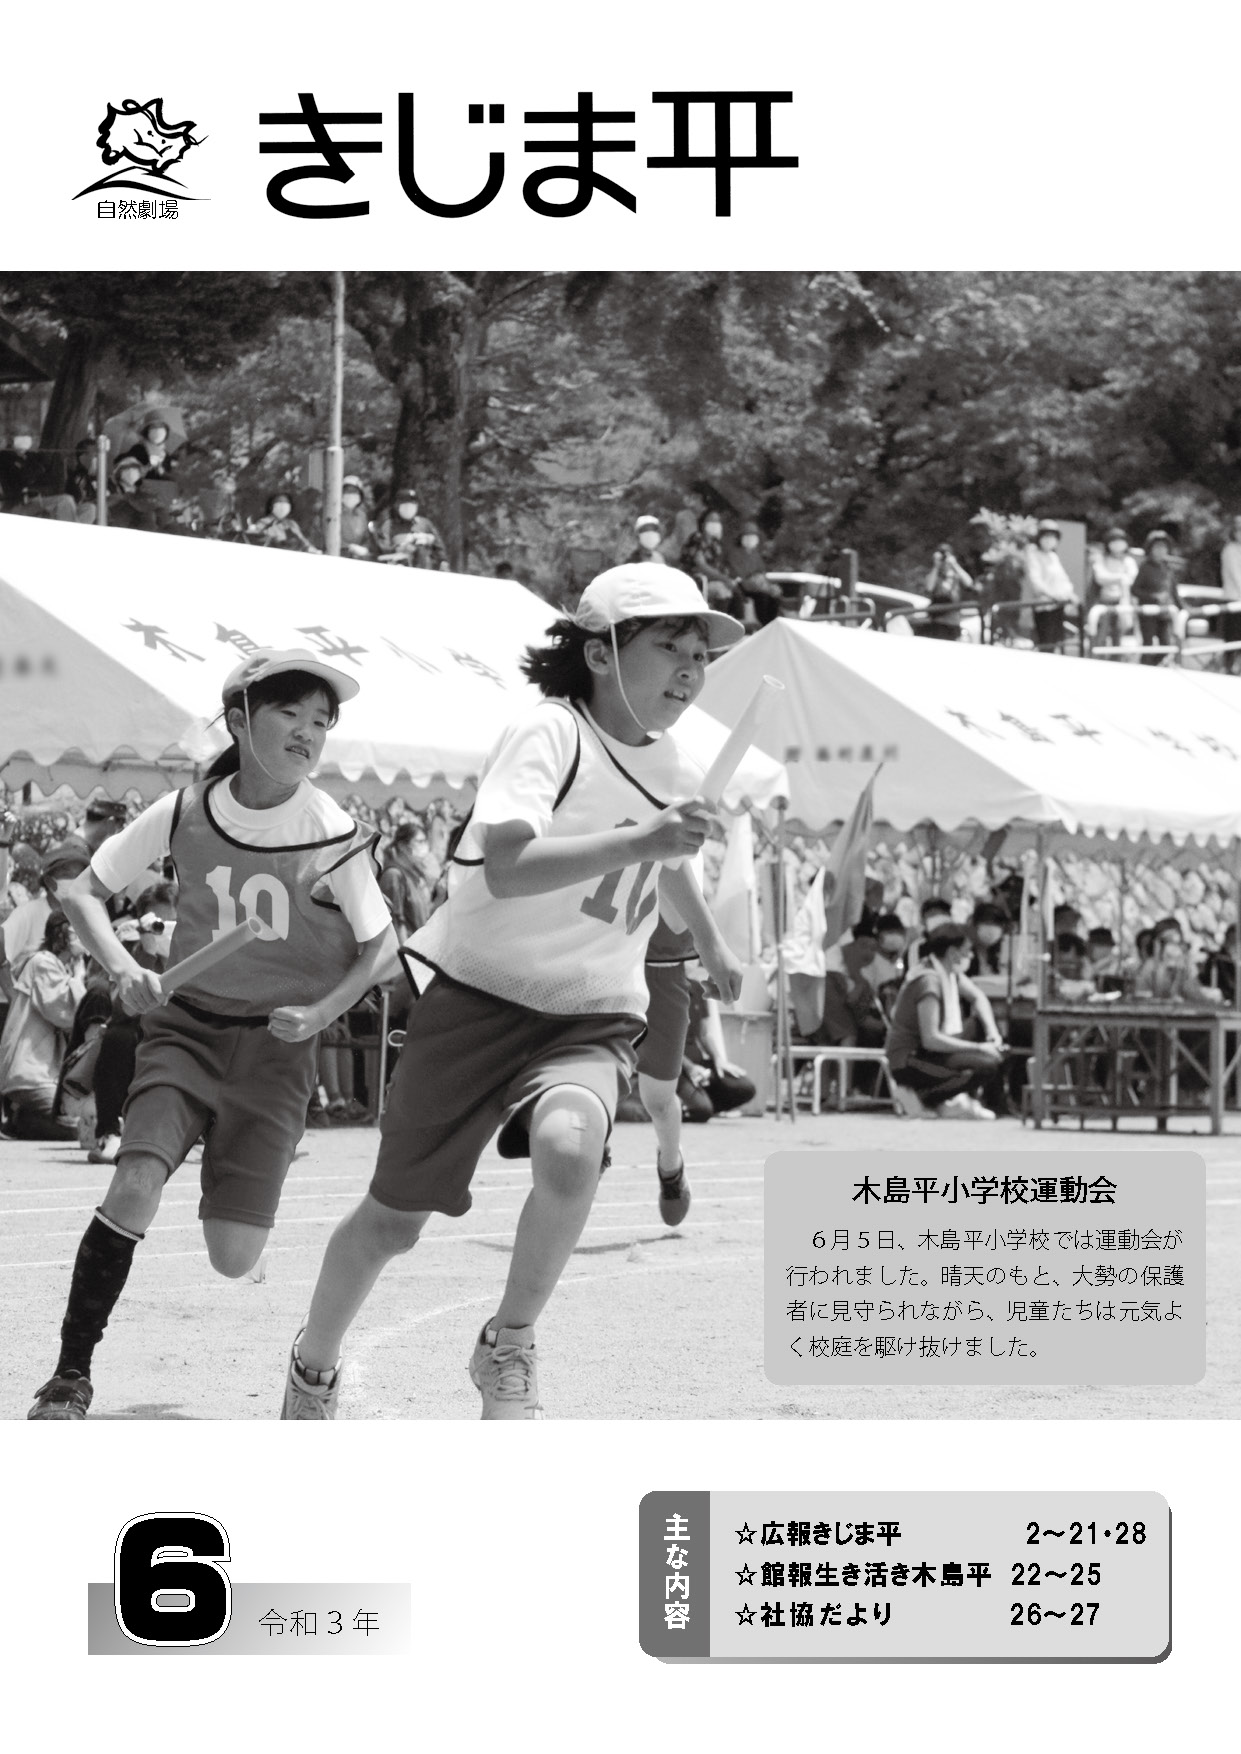 木島平村小学校の運動会でリレーに参加する子供たちの様子